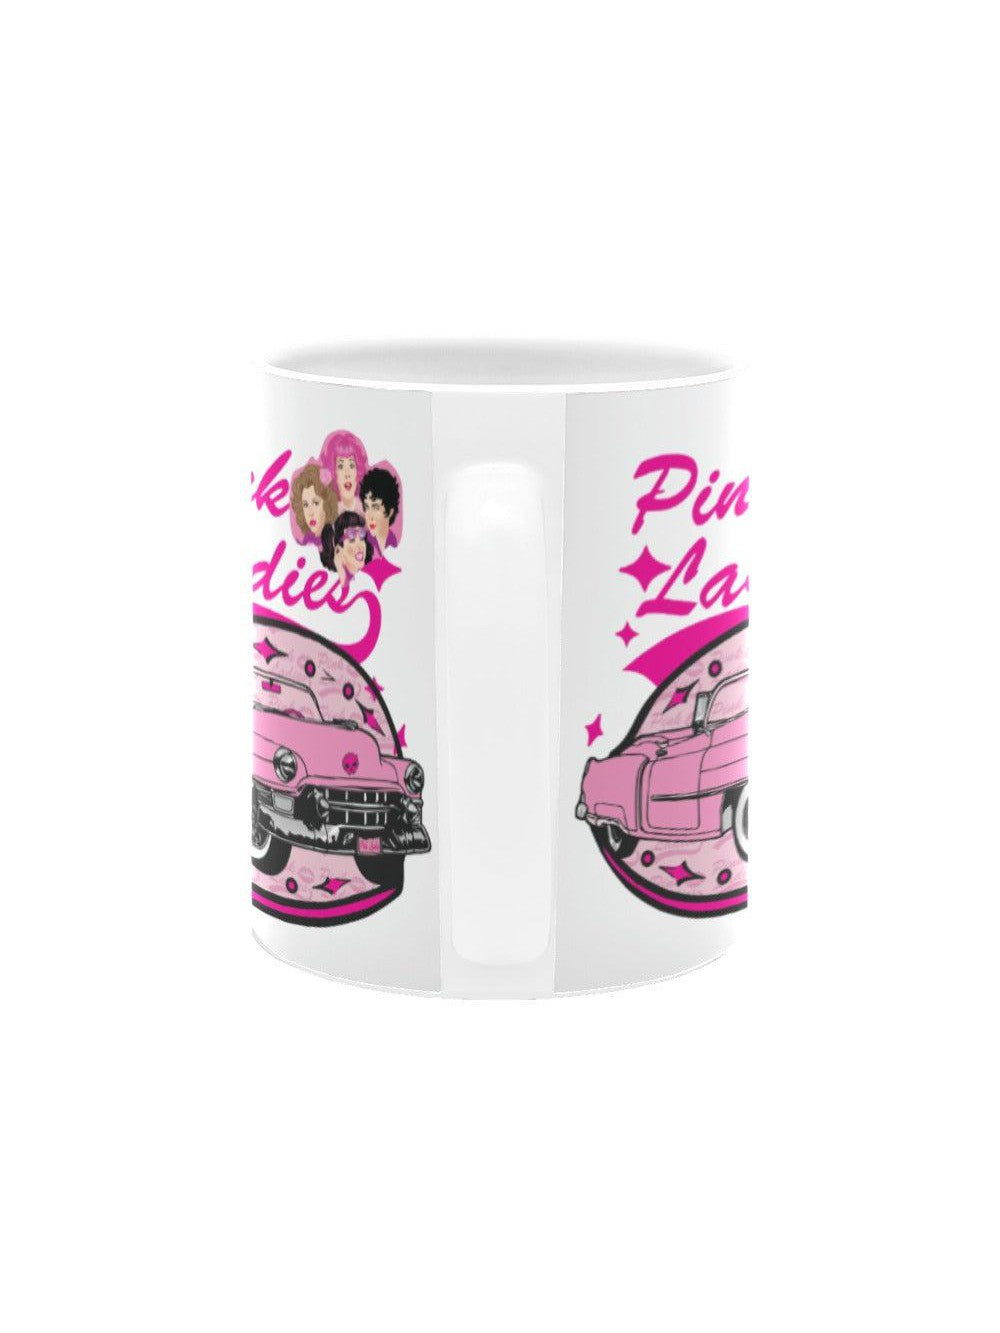 Pink Ladies Mug